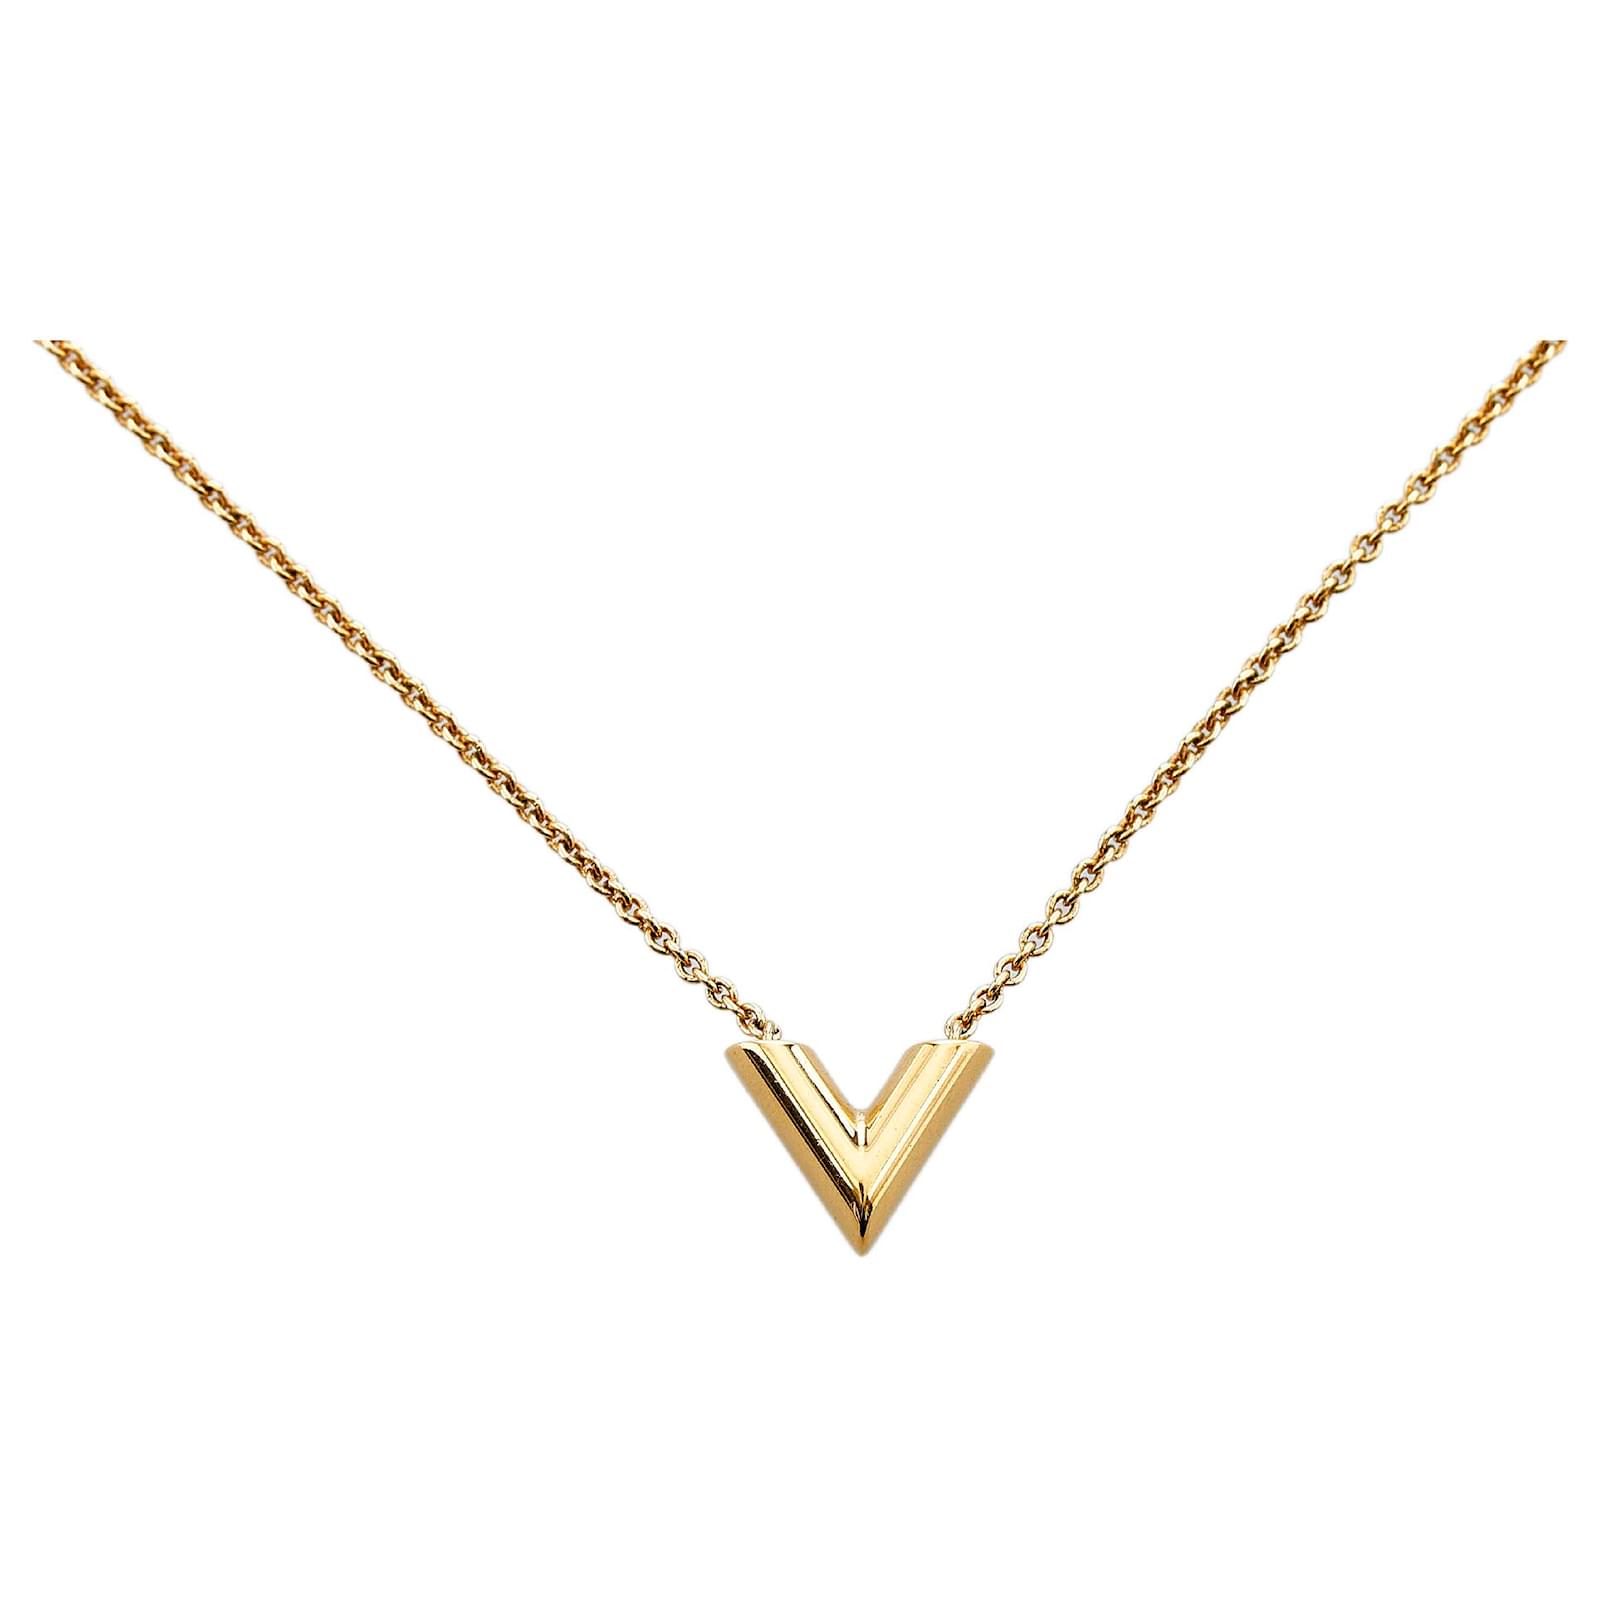 Louis Vuitton V necklace.  Necklace, Pendant necklace, Louis vuitton